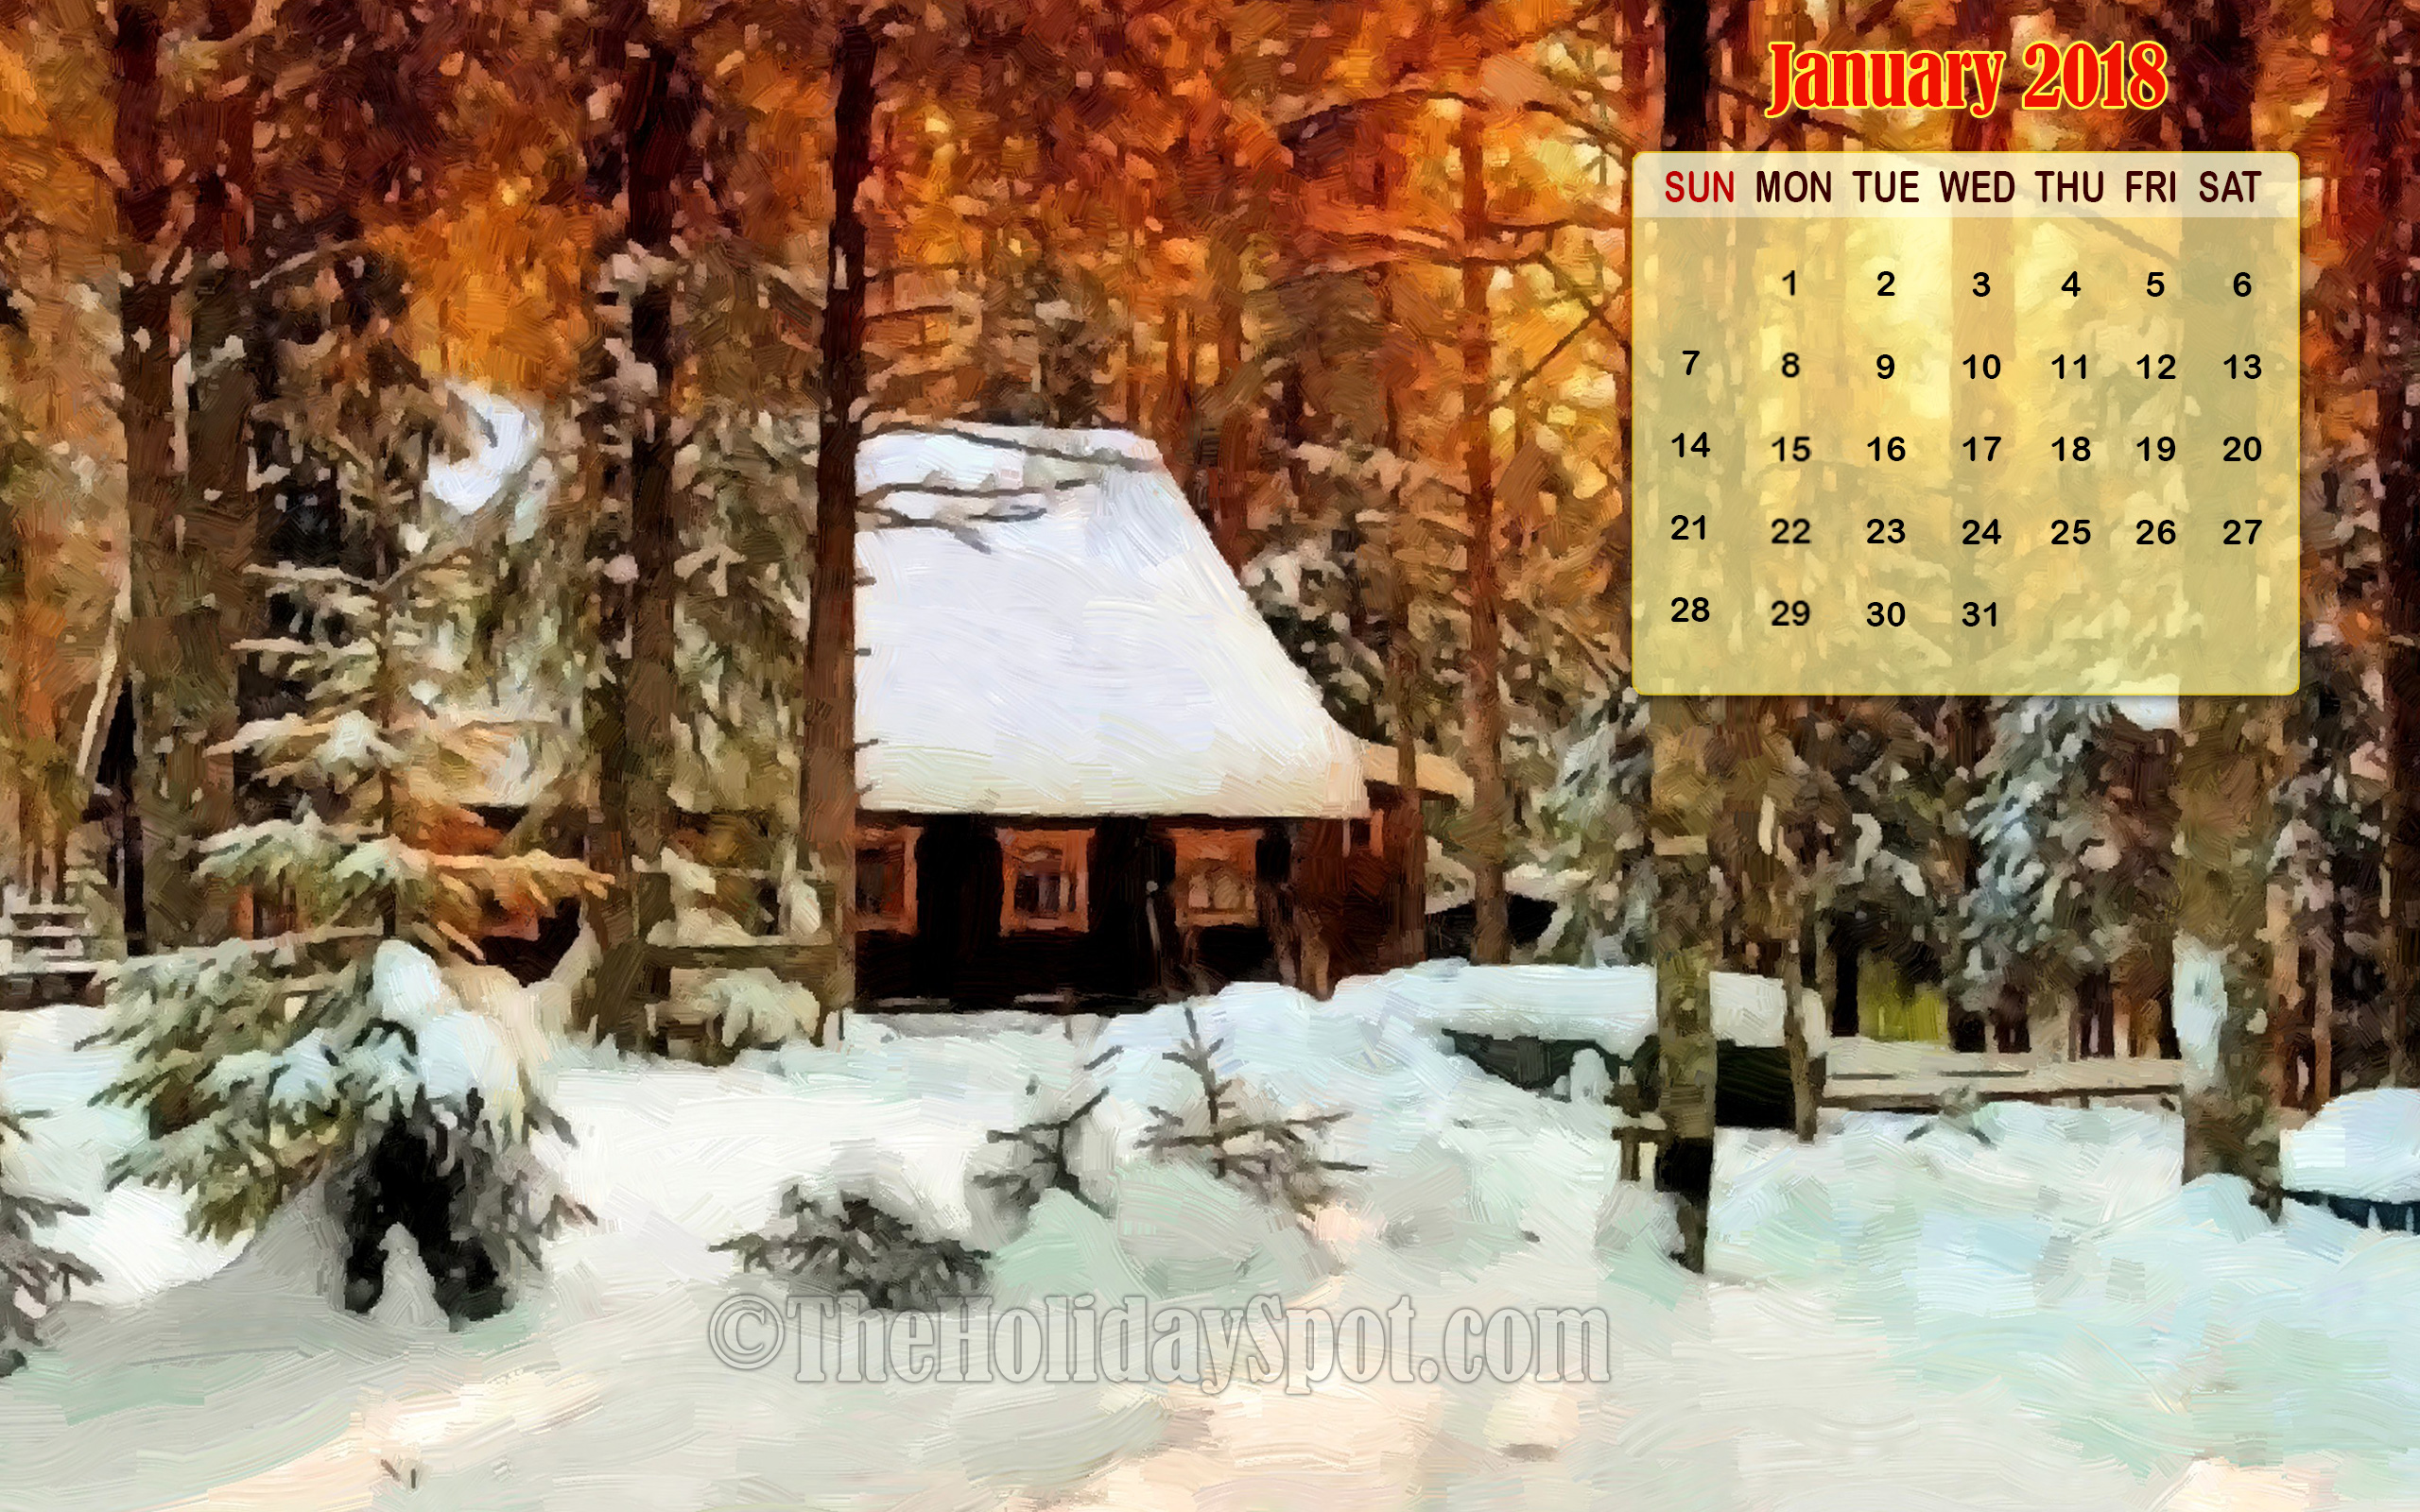 fond d'écran calendrier,hiver,neige,paysage naturel,arbre,maison de sucre